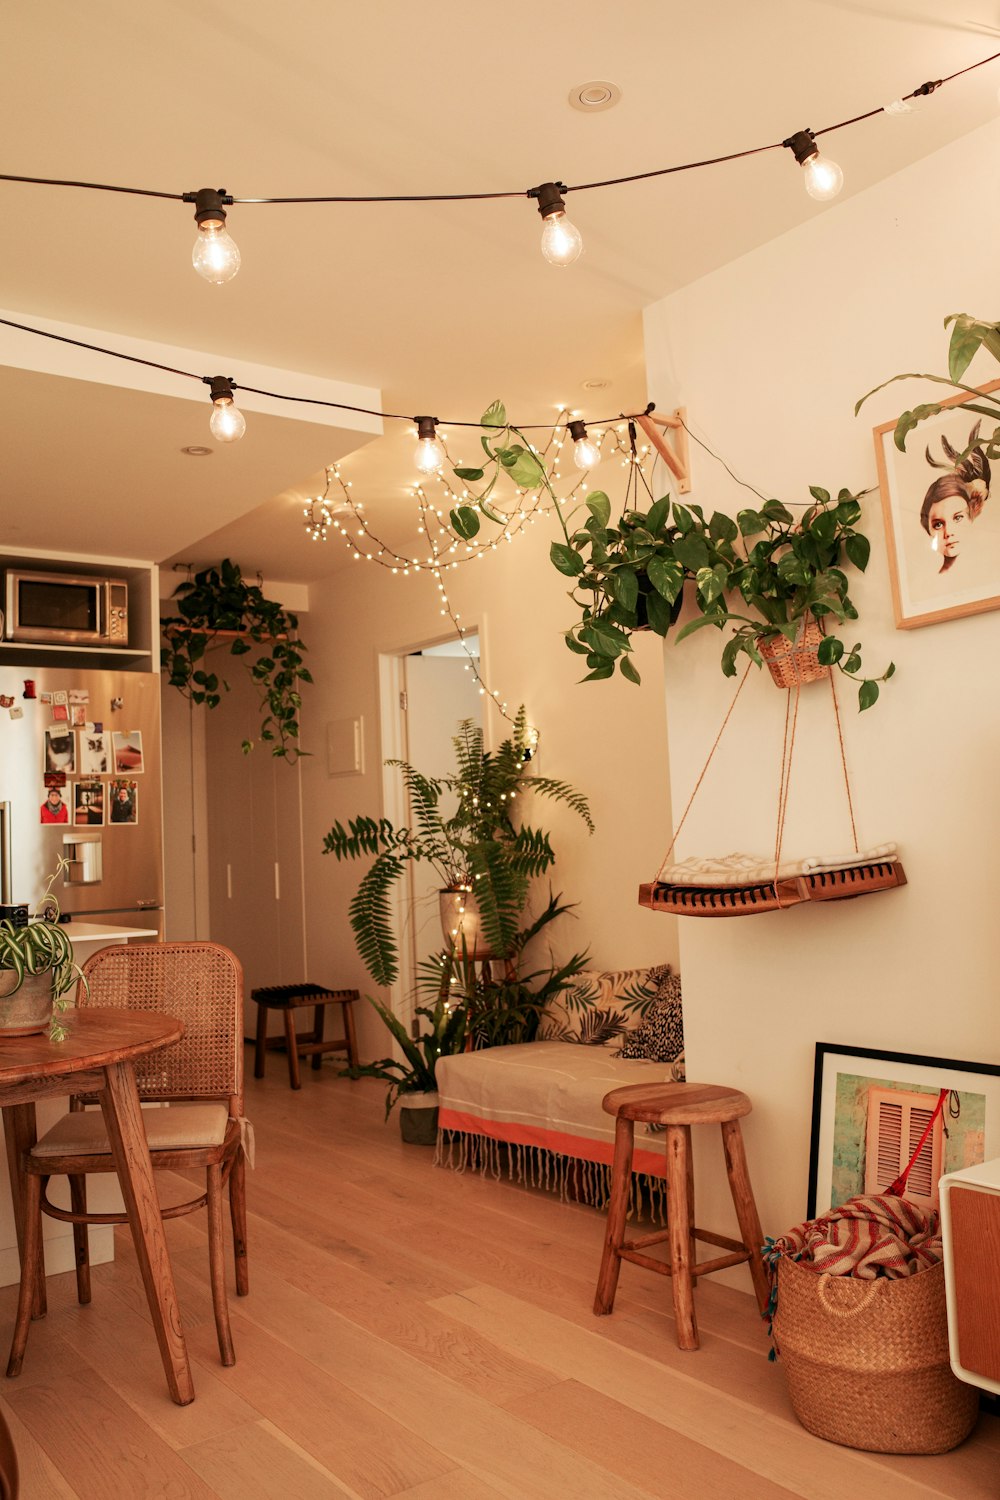 Grüne Zimmerpflanze in der Nähe von braunem Holztisch